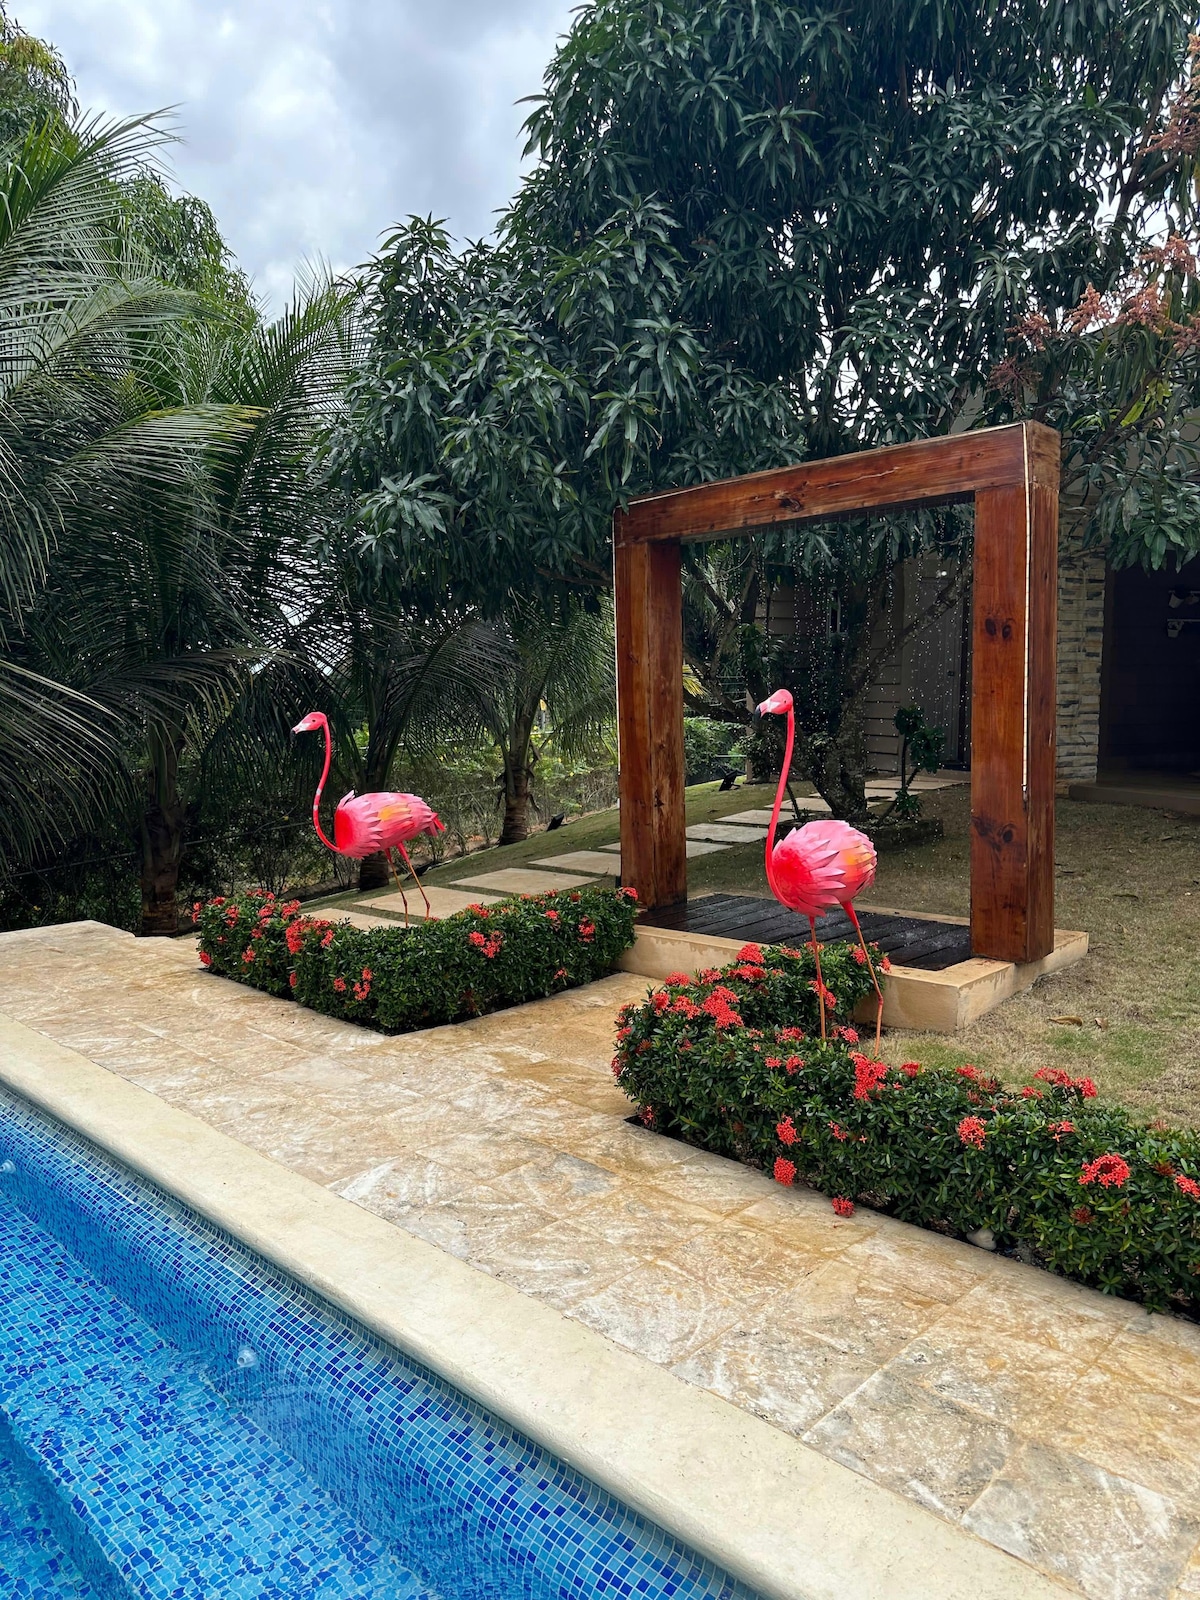 Flamingo themed villa near city center.